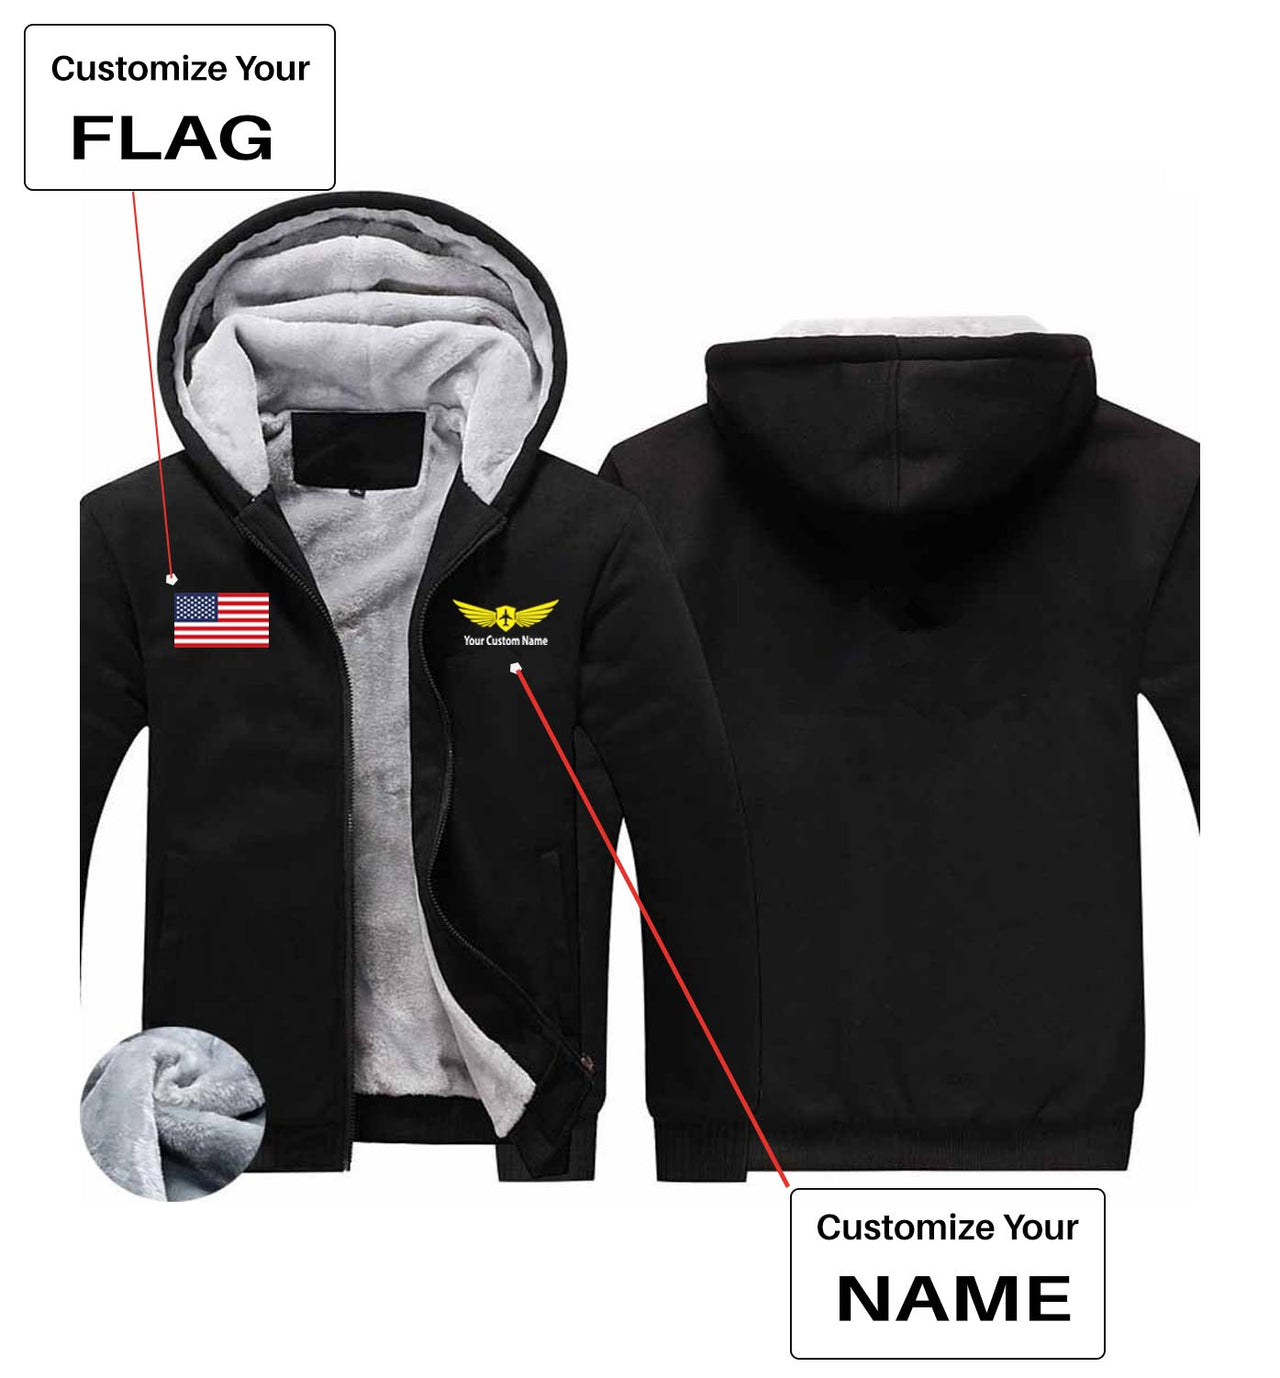 Your Custom Name & Flag (Badge 2) Designed Zipped Sweatshirts